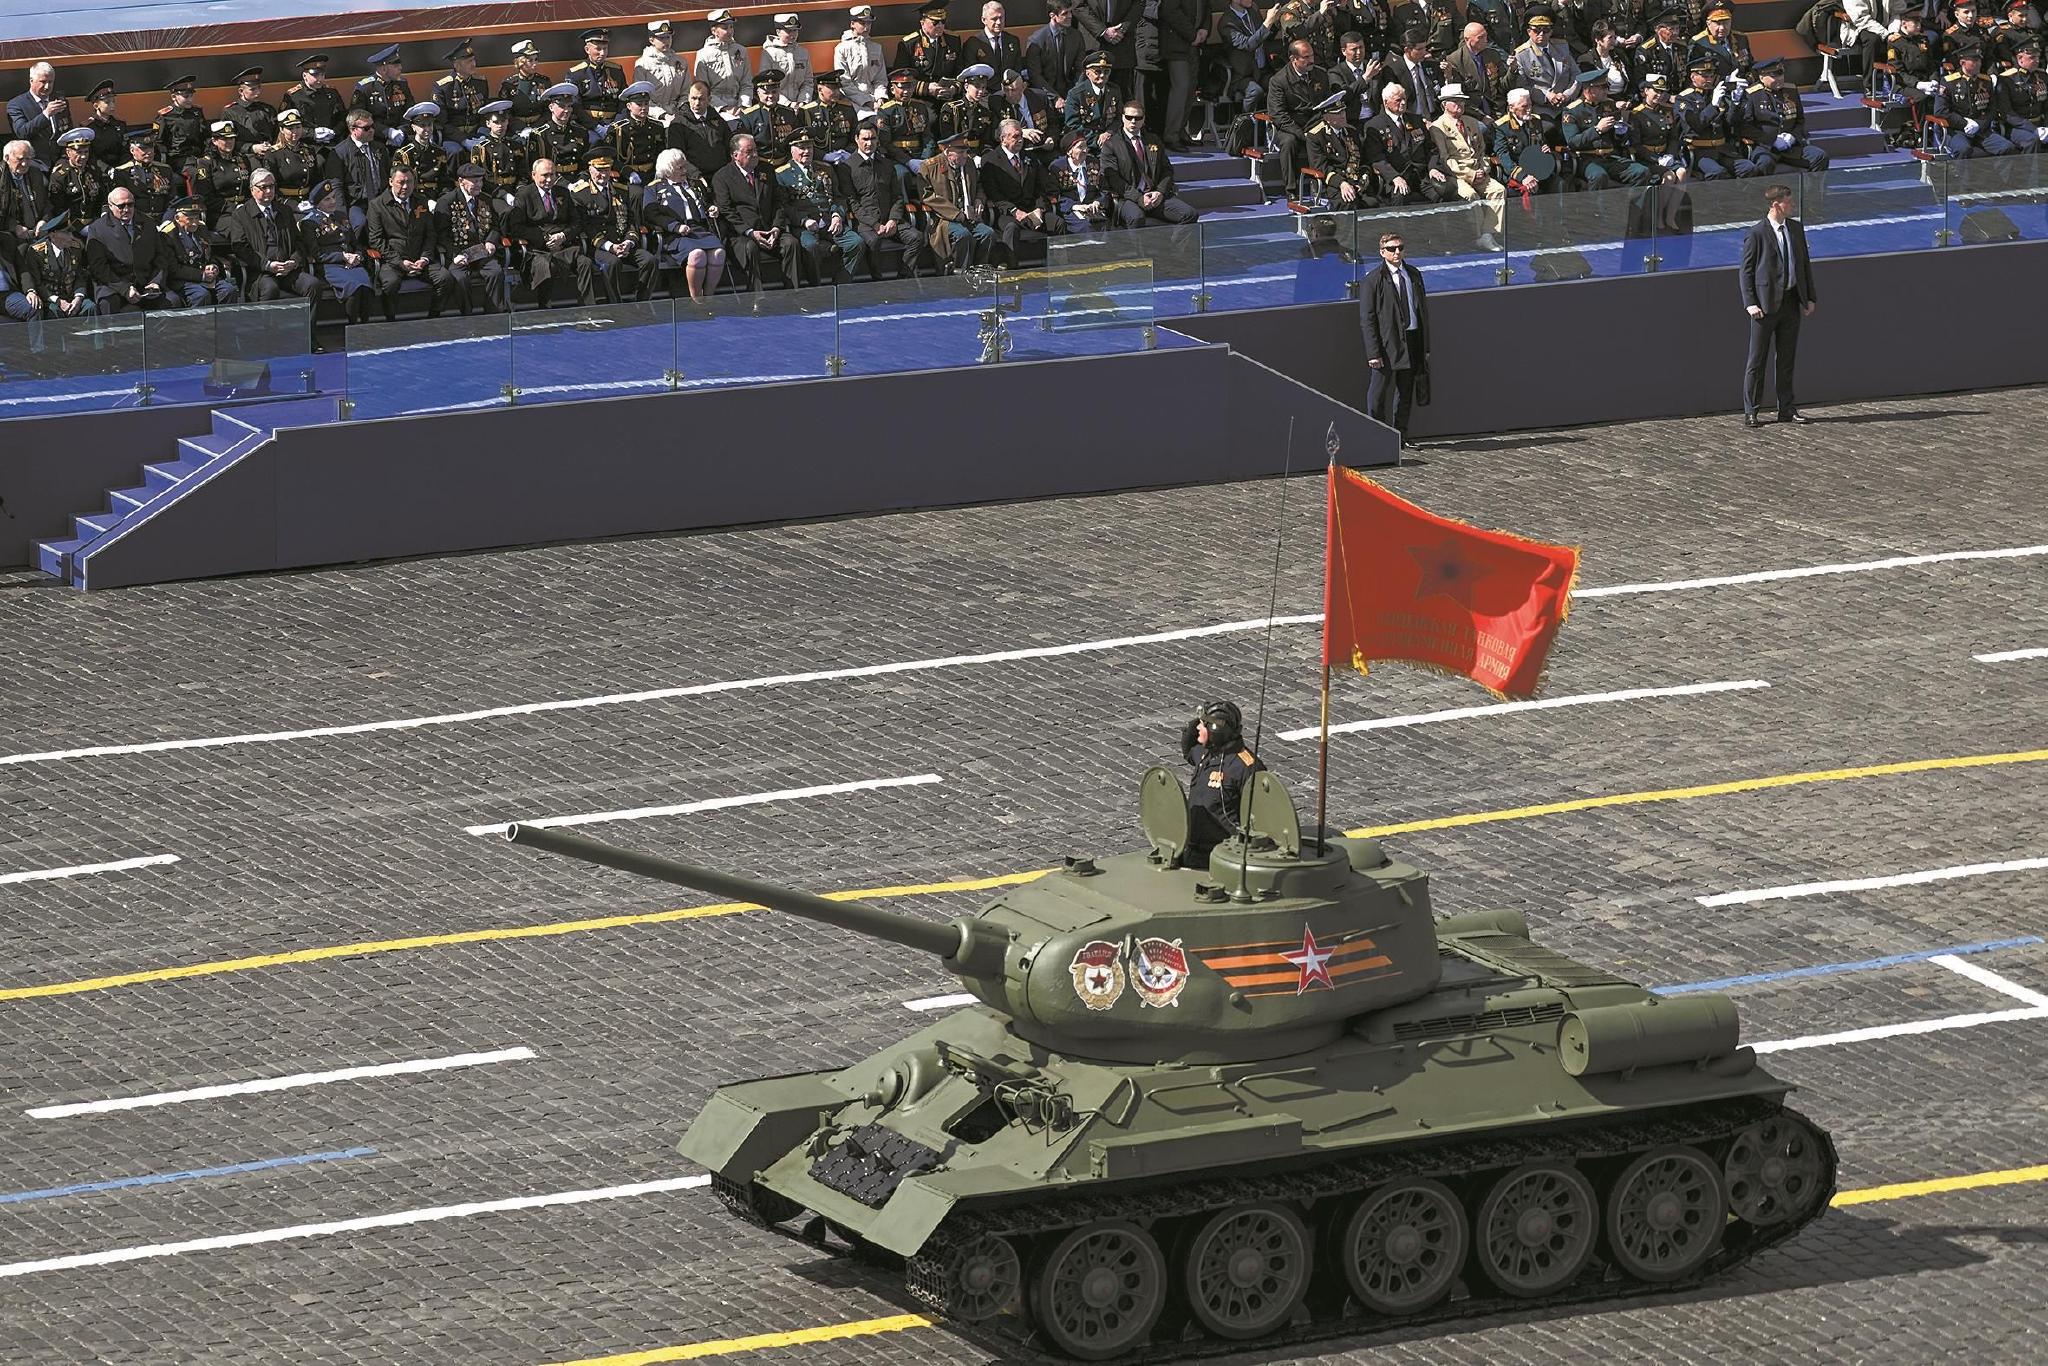 俄罗斯红场阅兵彩排 武器装备在大街上集结 - 中国军网